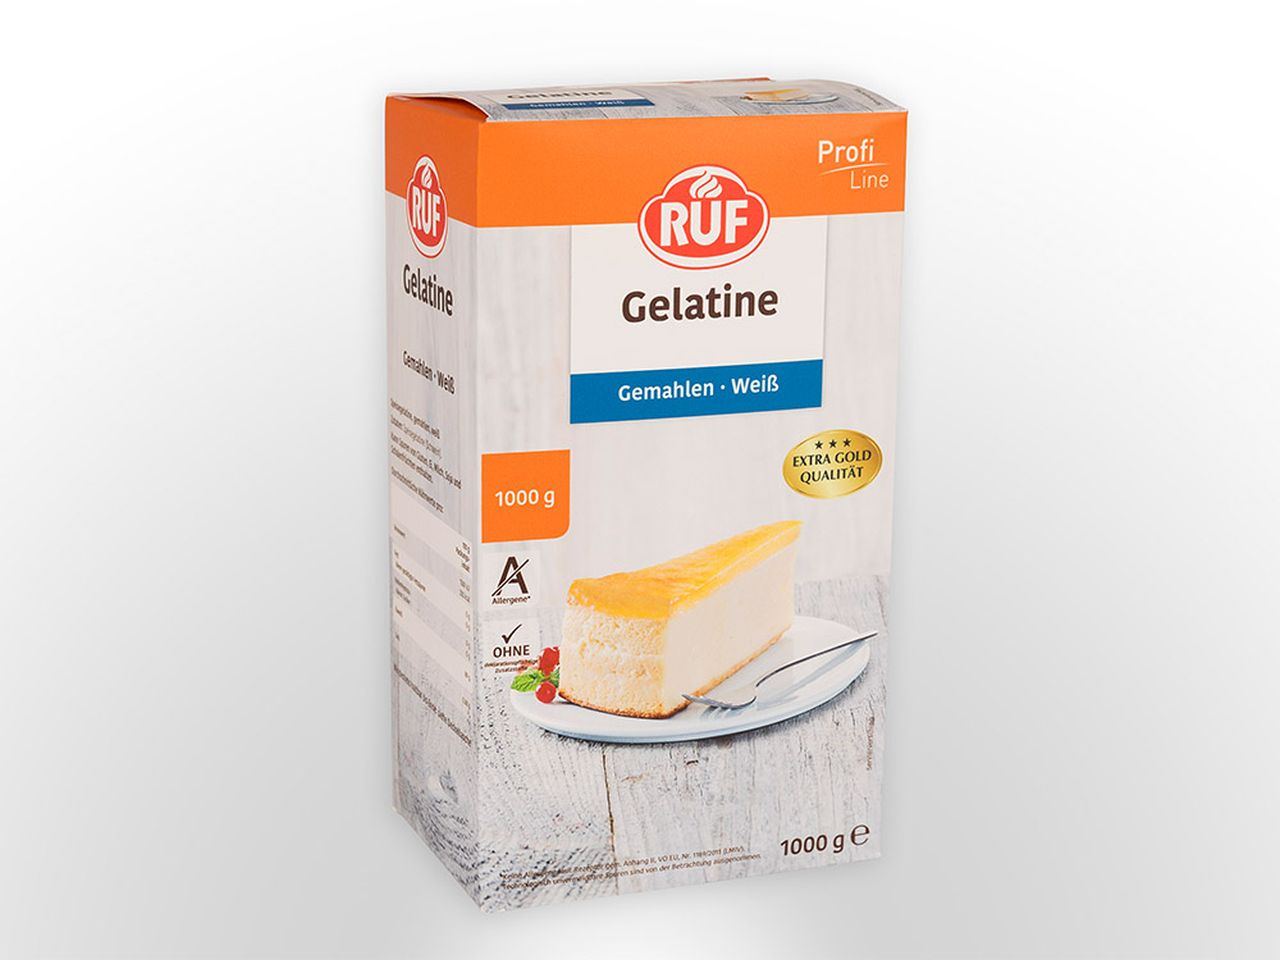 RUF Gelatine weiß gem. 1,0kg